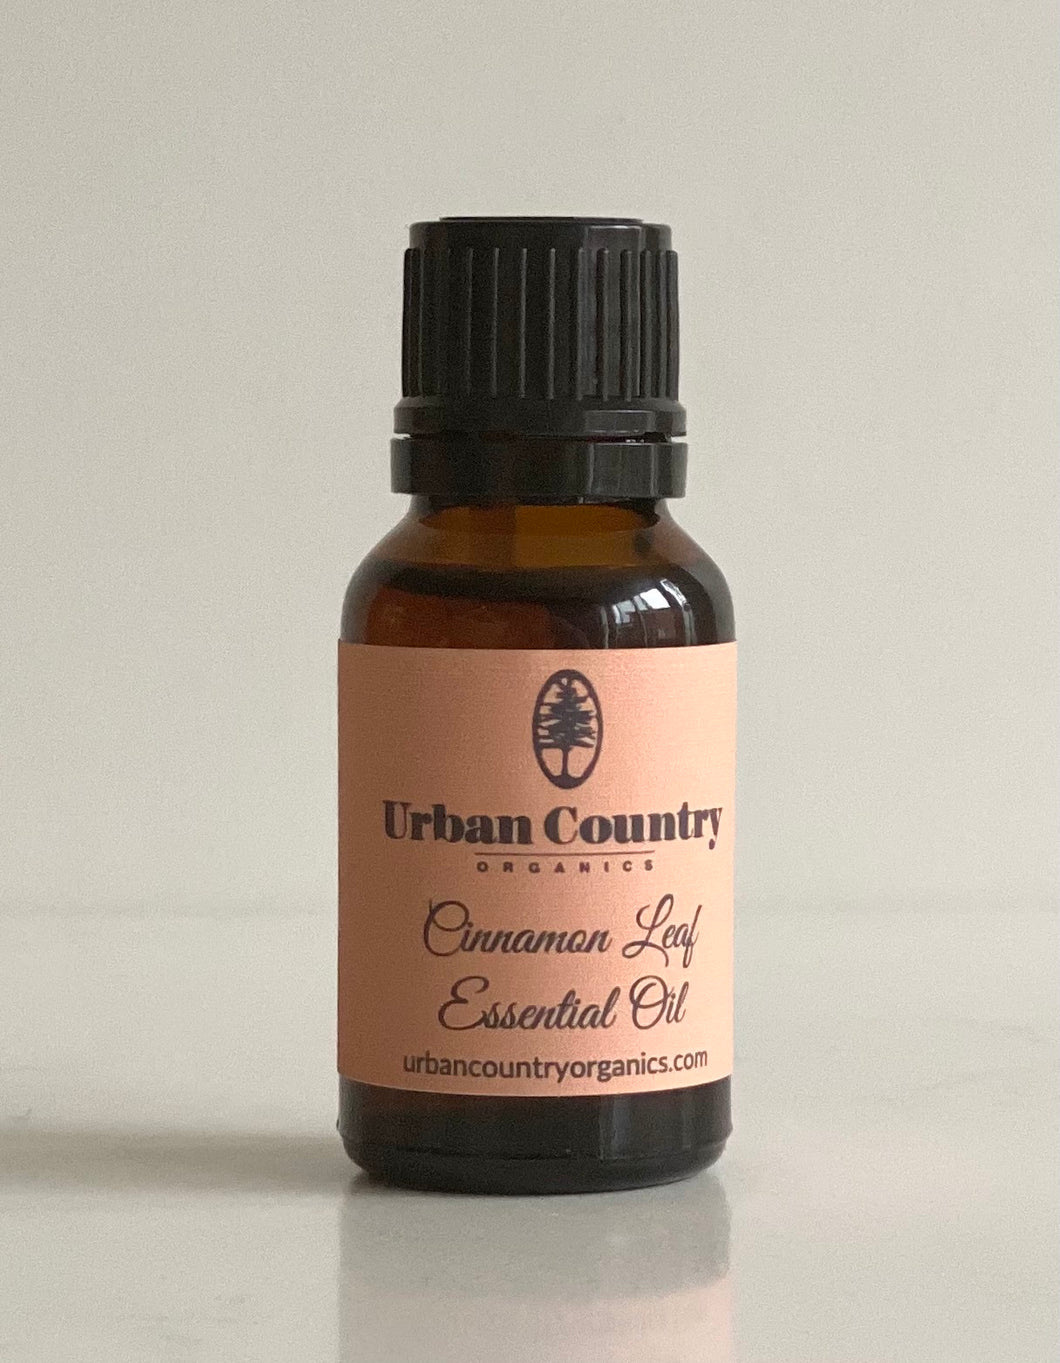 Urban Country Organics - Organic Cinnamon Leaf Essential Oil